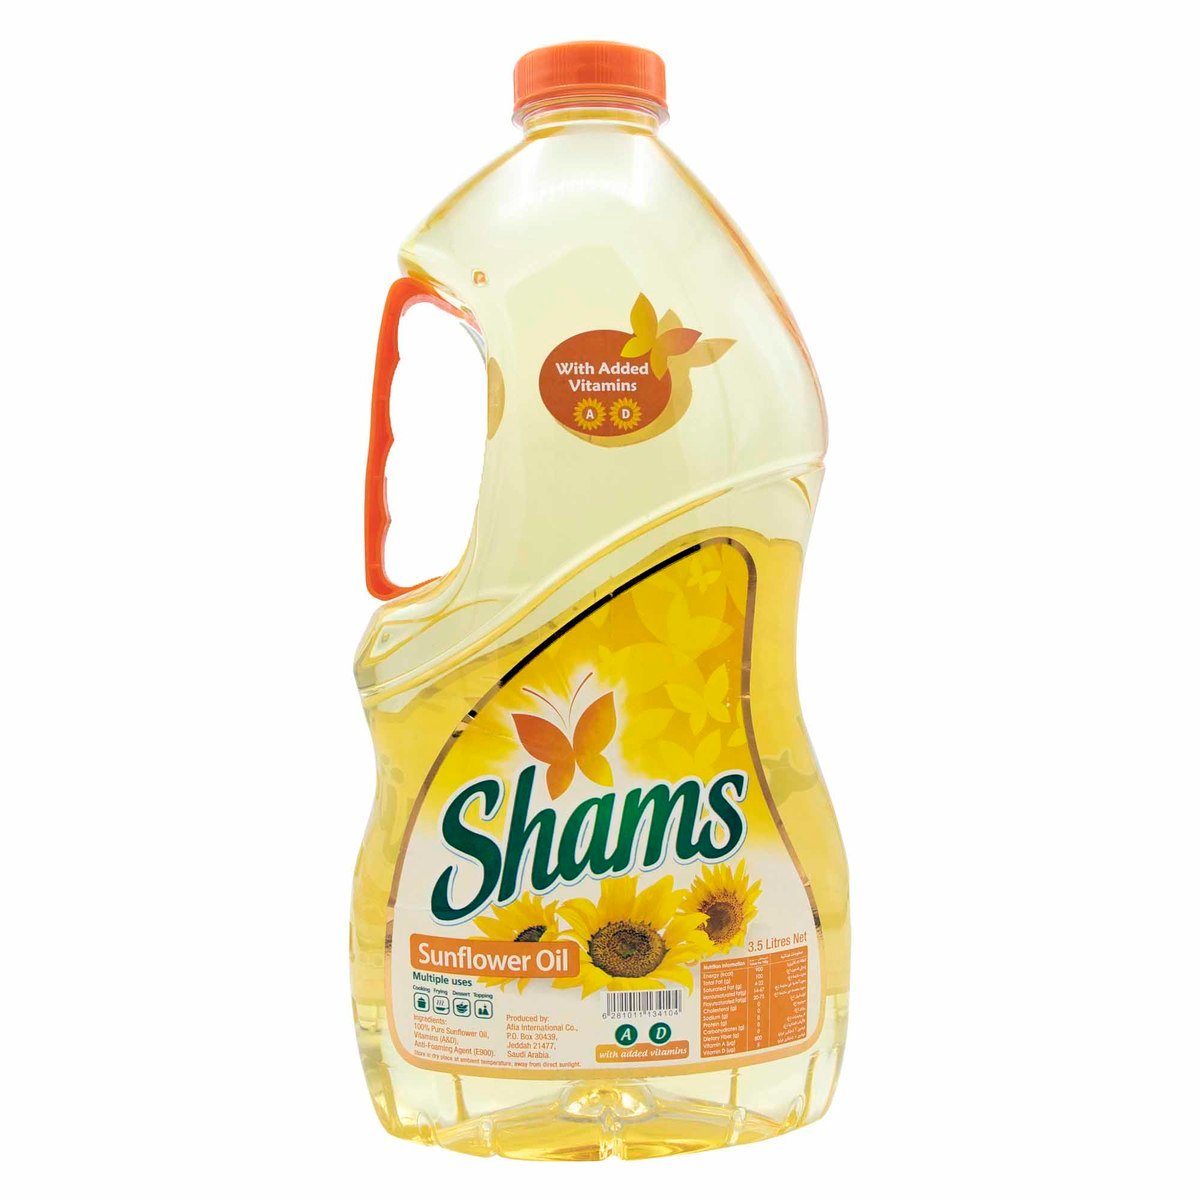 Shams Sunflower Oil 3.5Litre